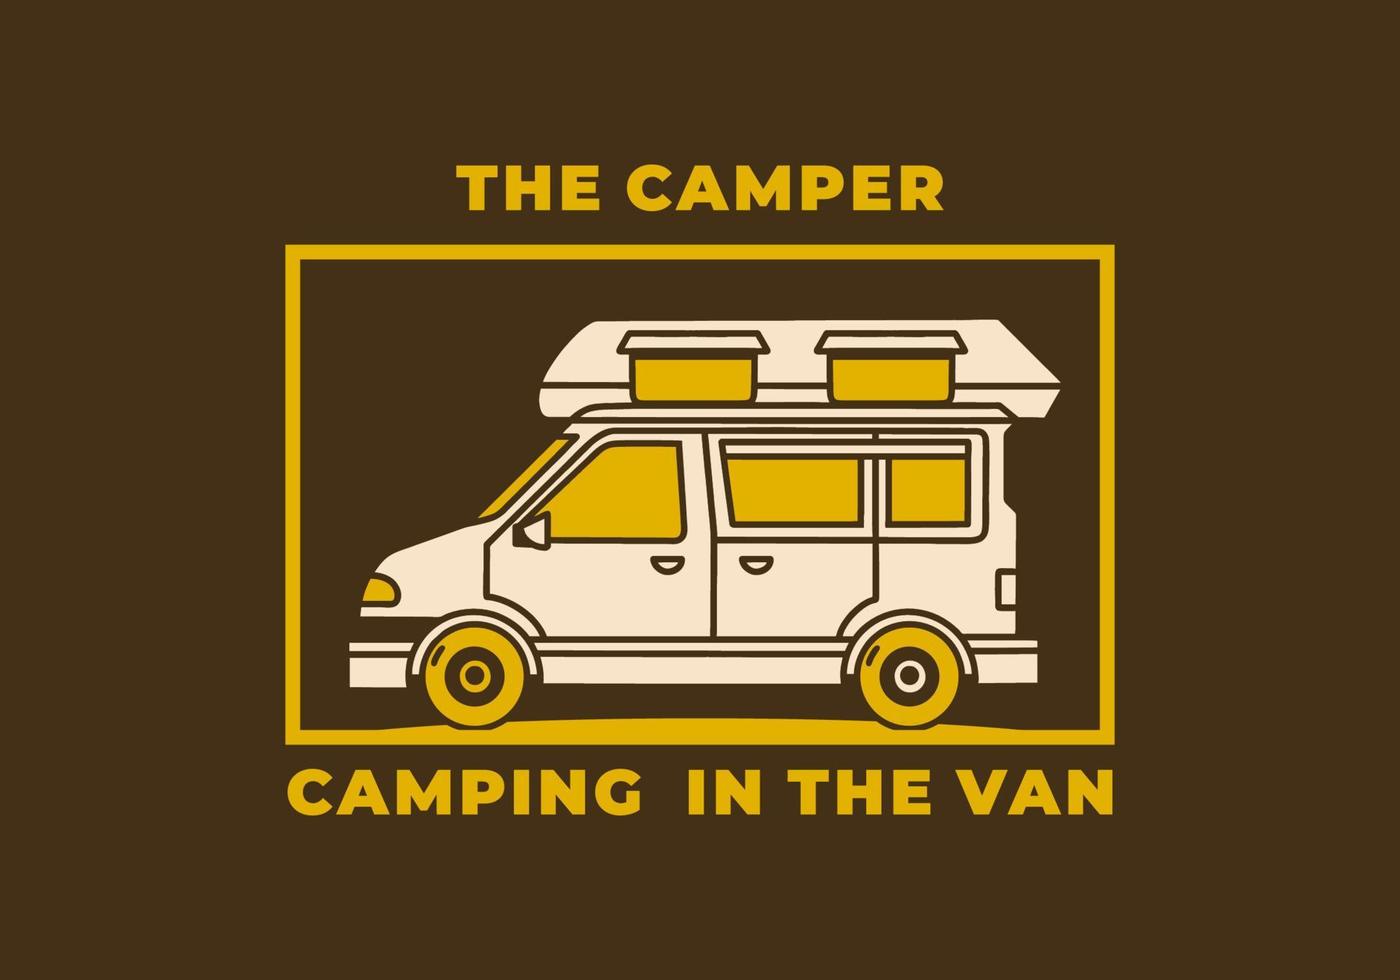 Vintage art illustration of a camper van car vector